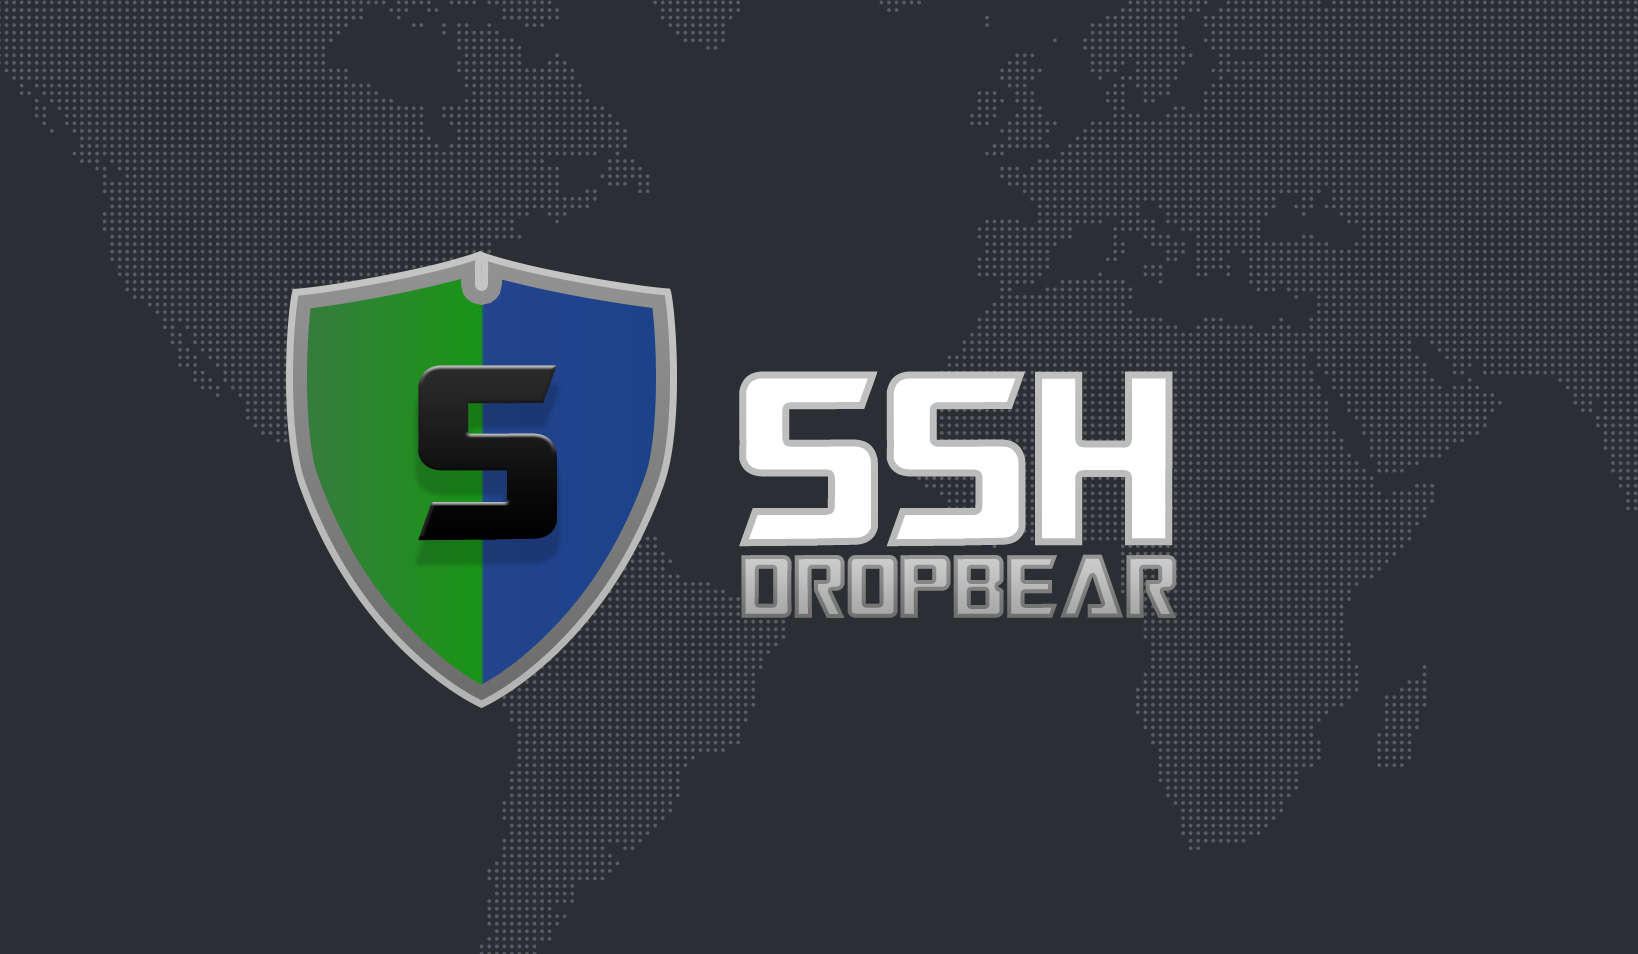 dropbear ssh 2013.59 vunrabilities